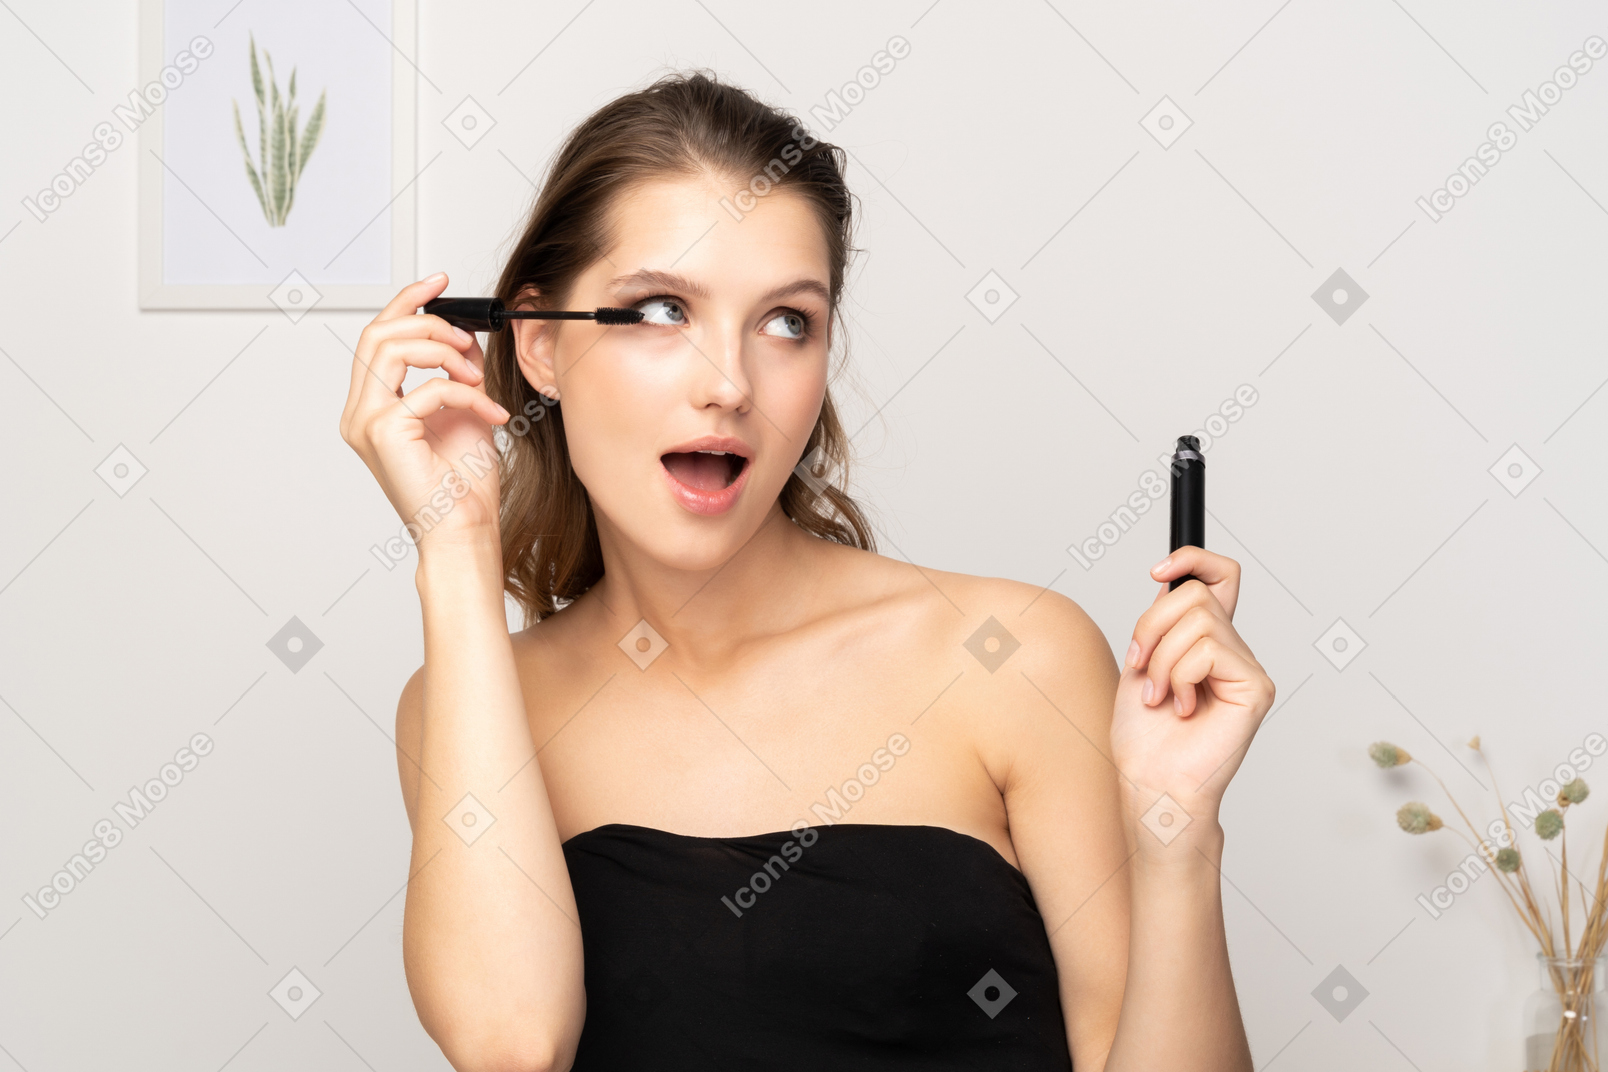 Vista frontal de una joven sorprendida vistiendo top negro aplicando rímel